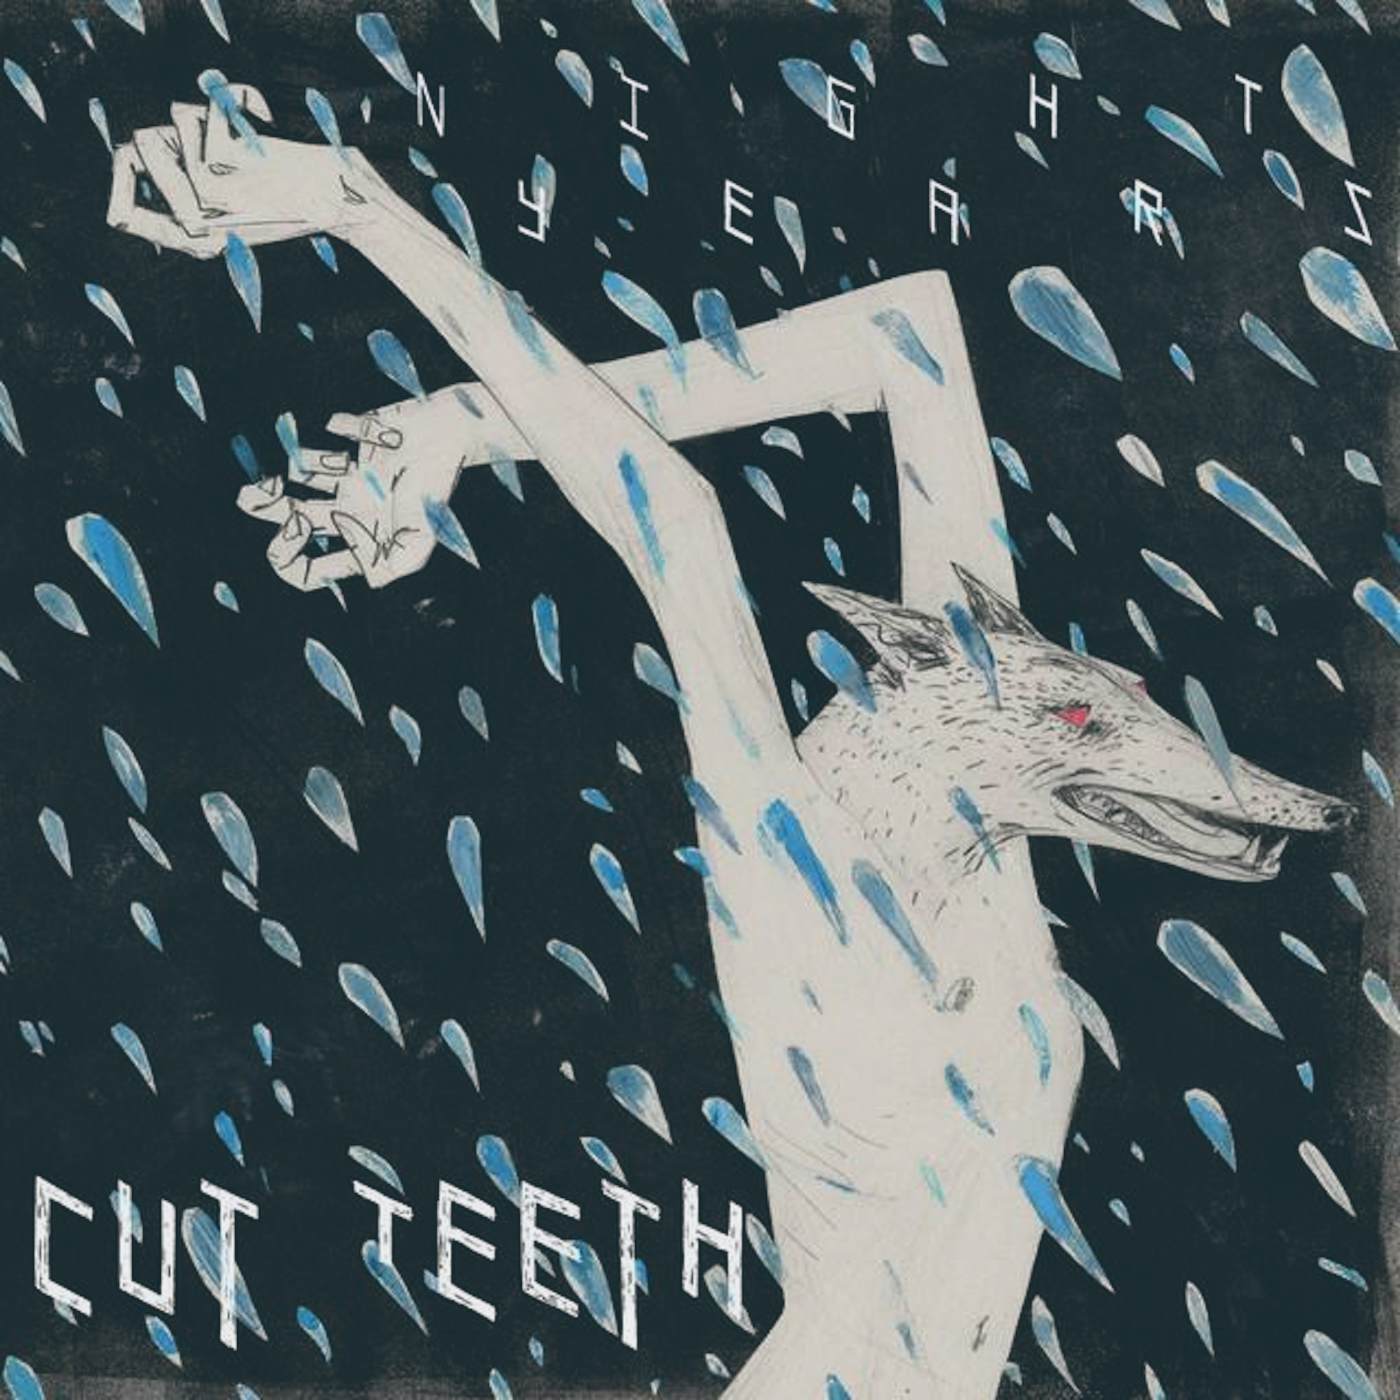 Cut Teeth